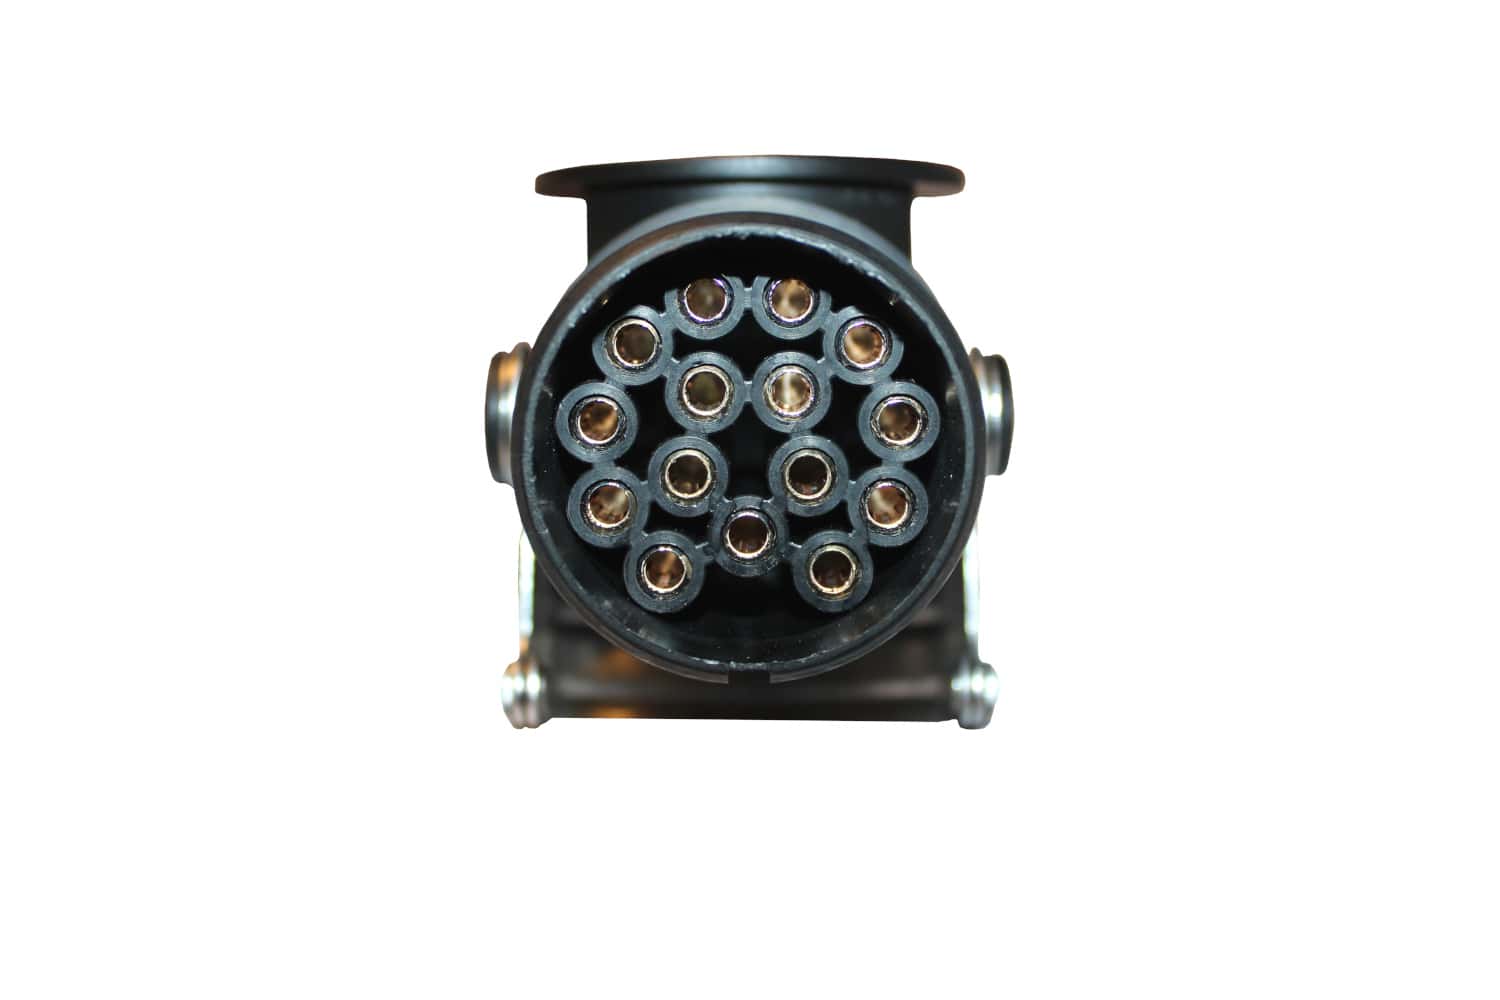 Dragkrok testenhet plugg 24V lastbil GSE Trailer tester Test Plug Testline 15-polig CAN-BUS plugg tester lampa 12805 12855